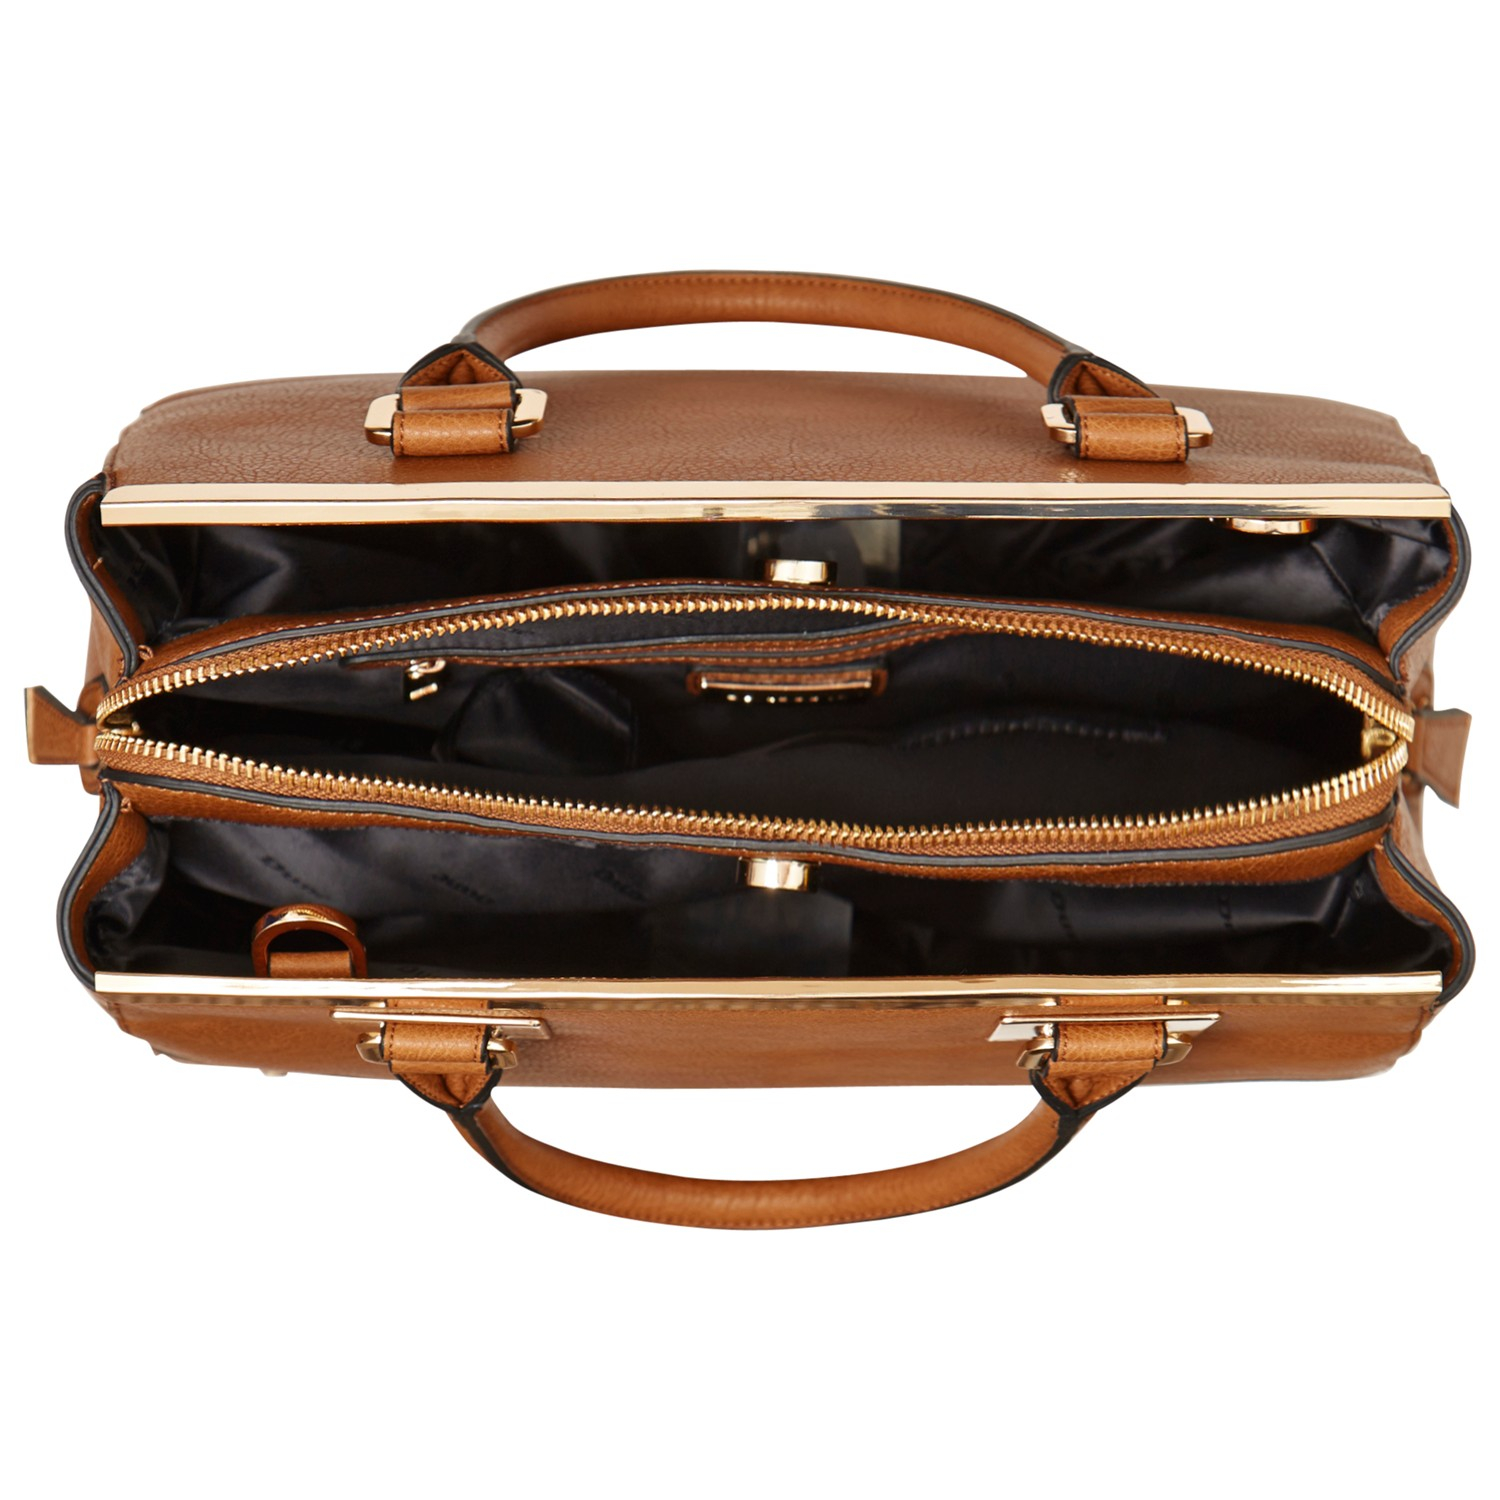 Dune Dartop Metal Trim Multi Compartment Handbag in Tan (Brown) - Lyst